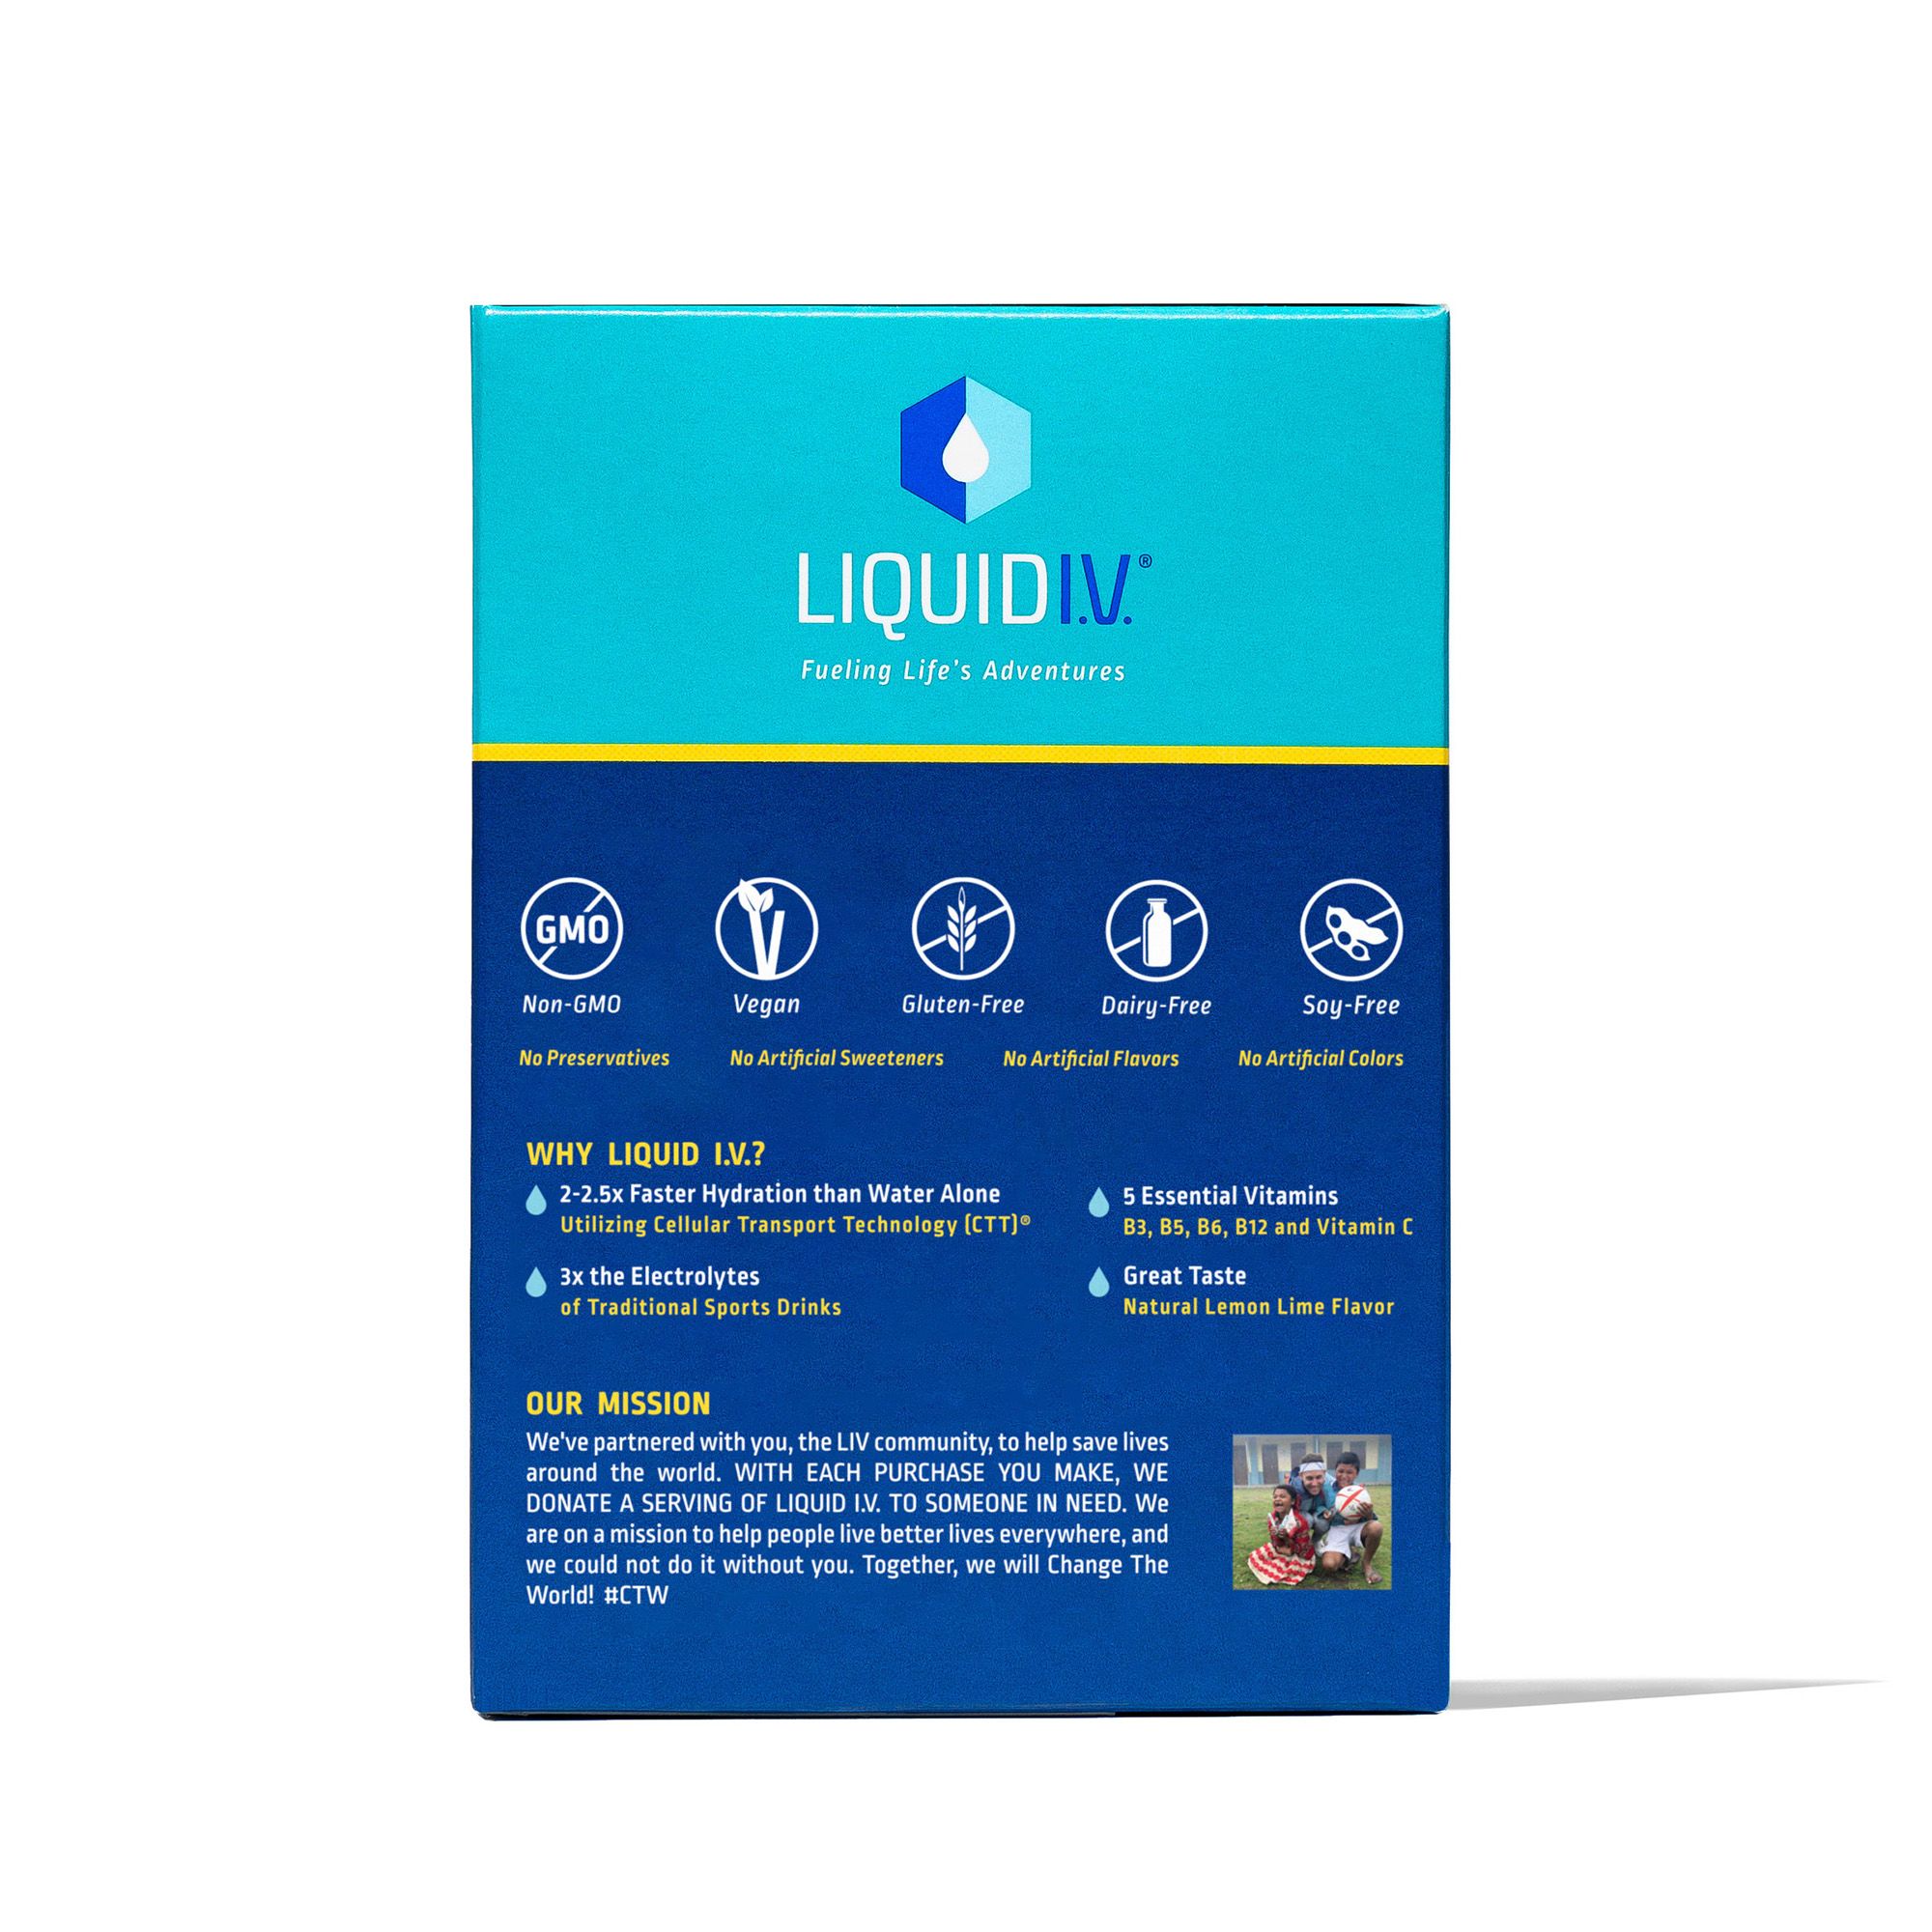 Liquid I.V. rolls out Energy Multiplier line